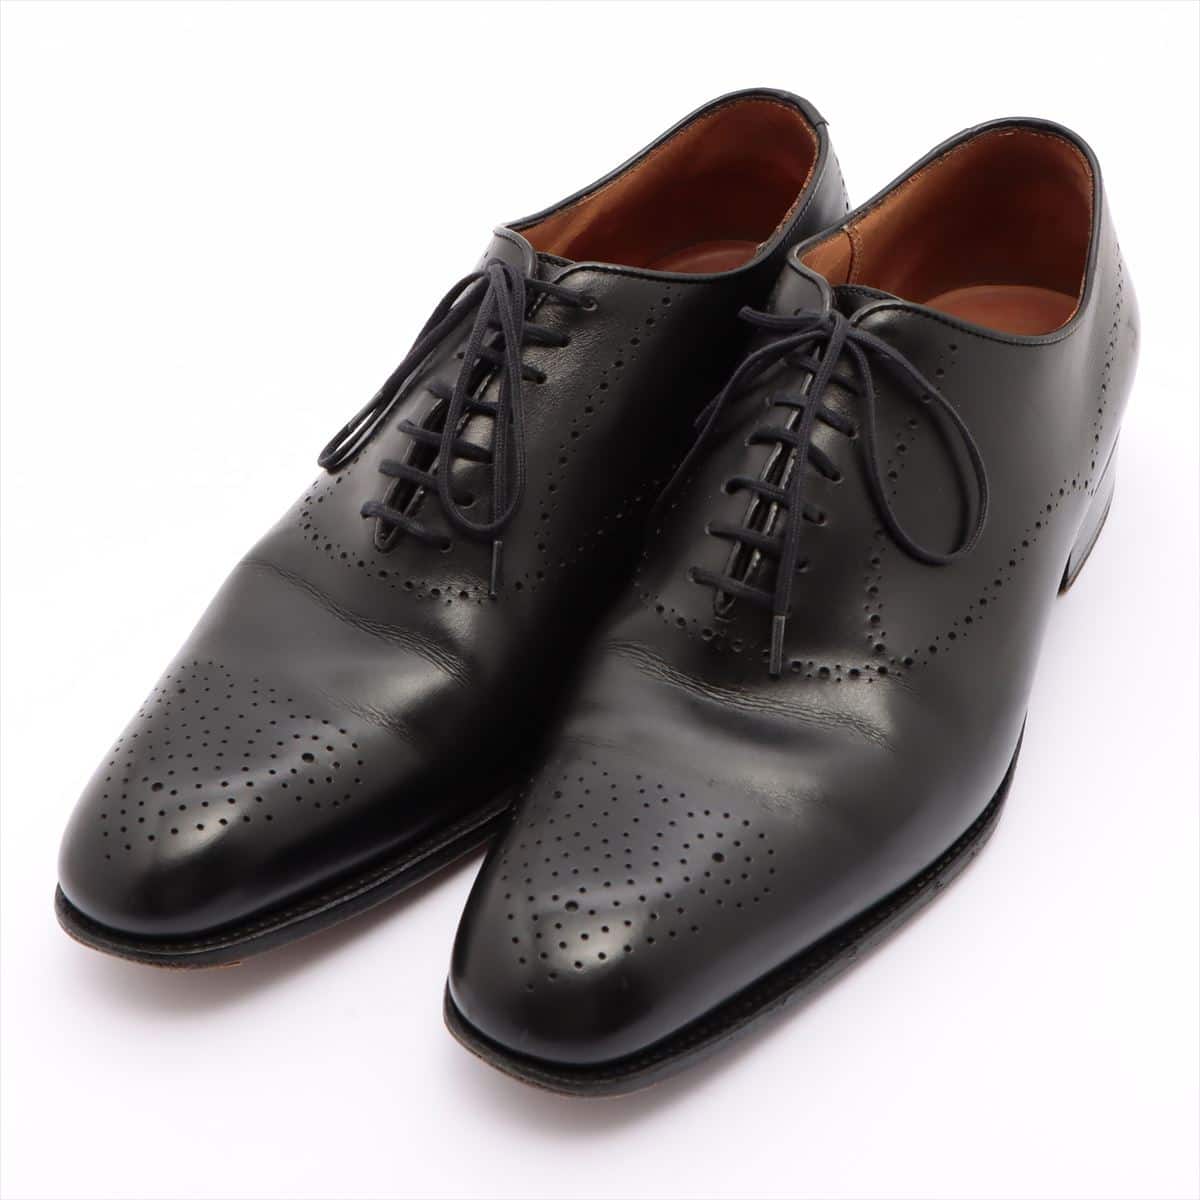 J. M. Weston Leather Leather shoes 5 Men's Black